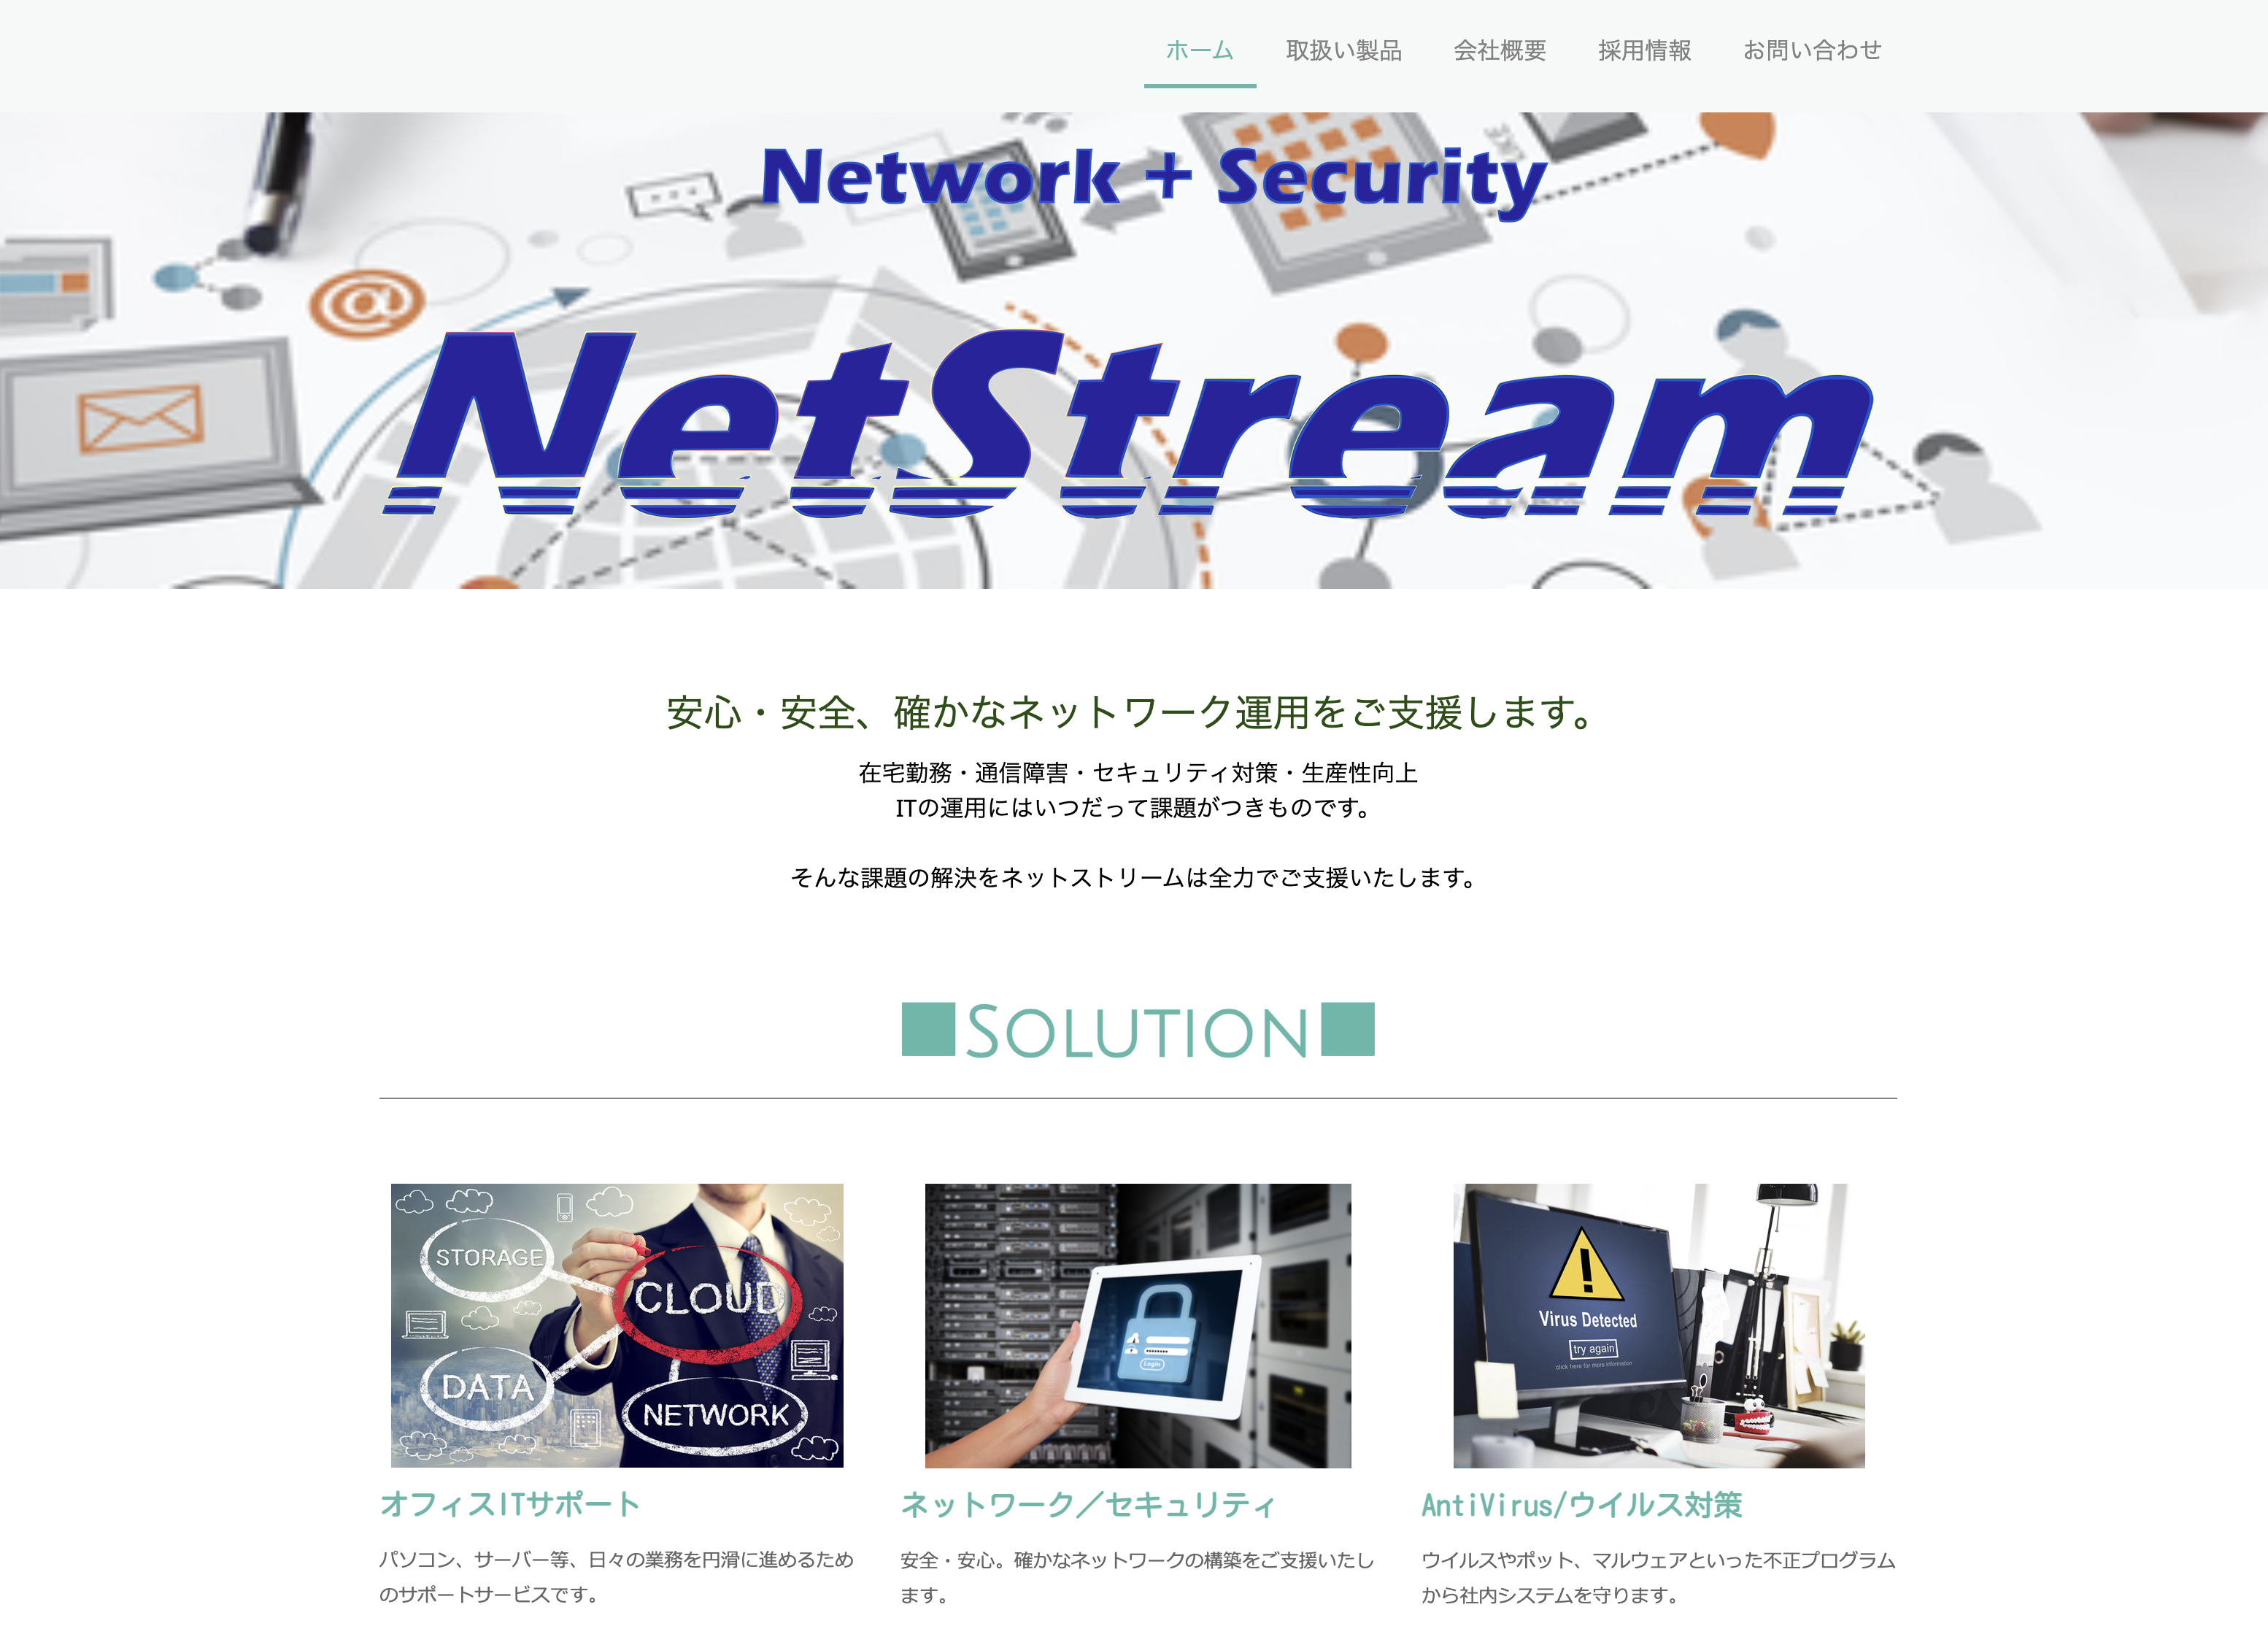 ネットストリーム株式会社のネットストリーム株式会社:情報システム代行サービス